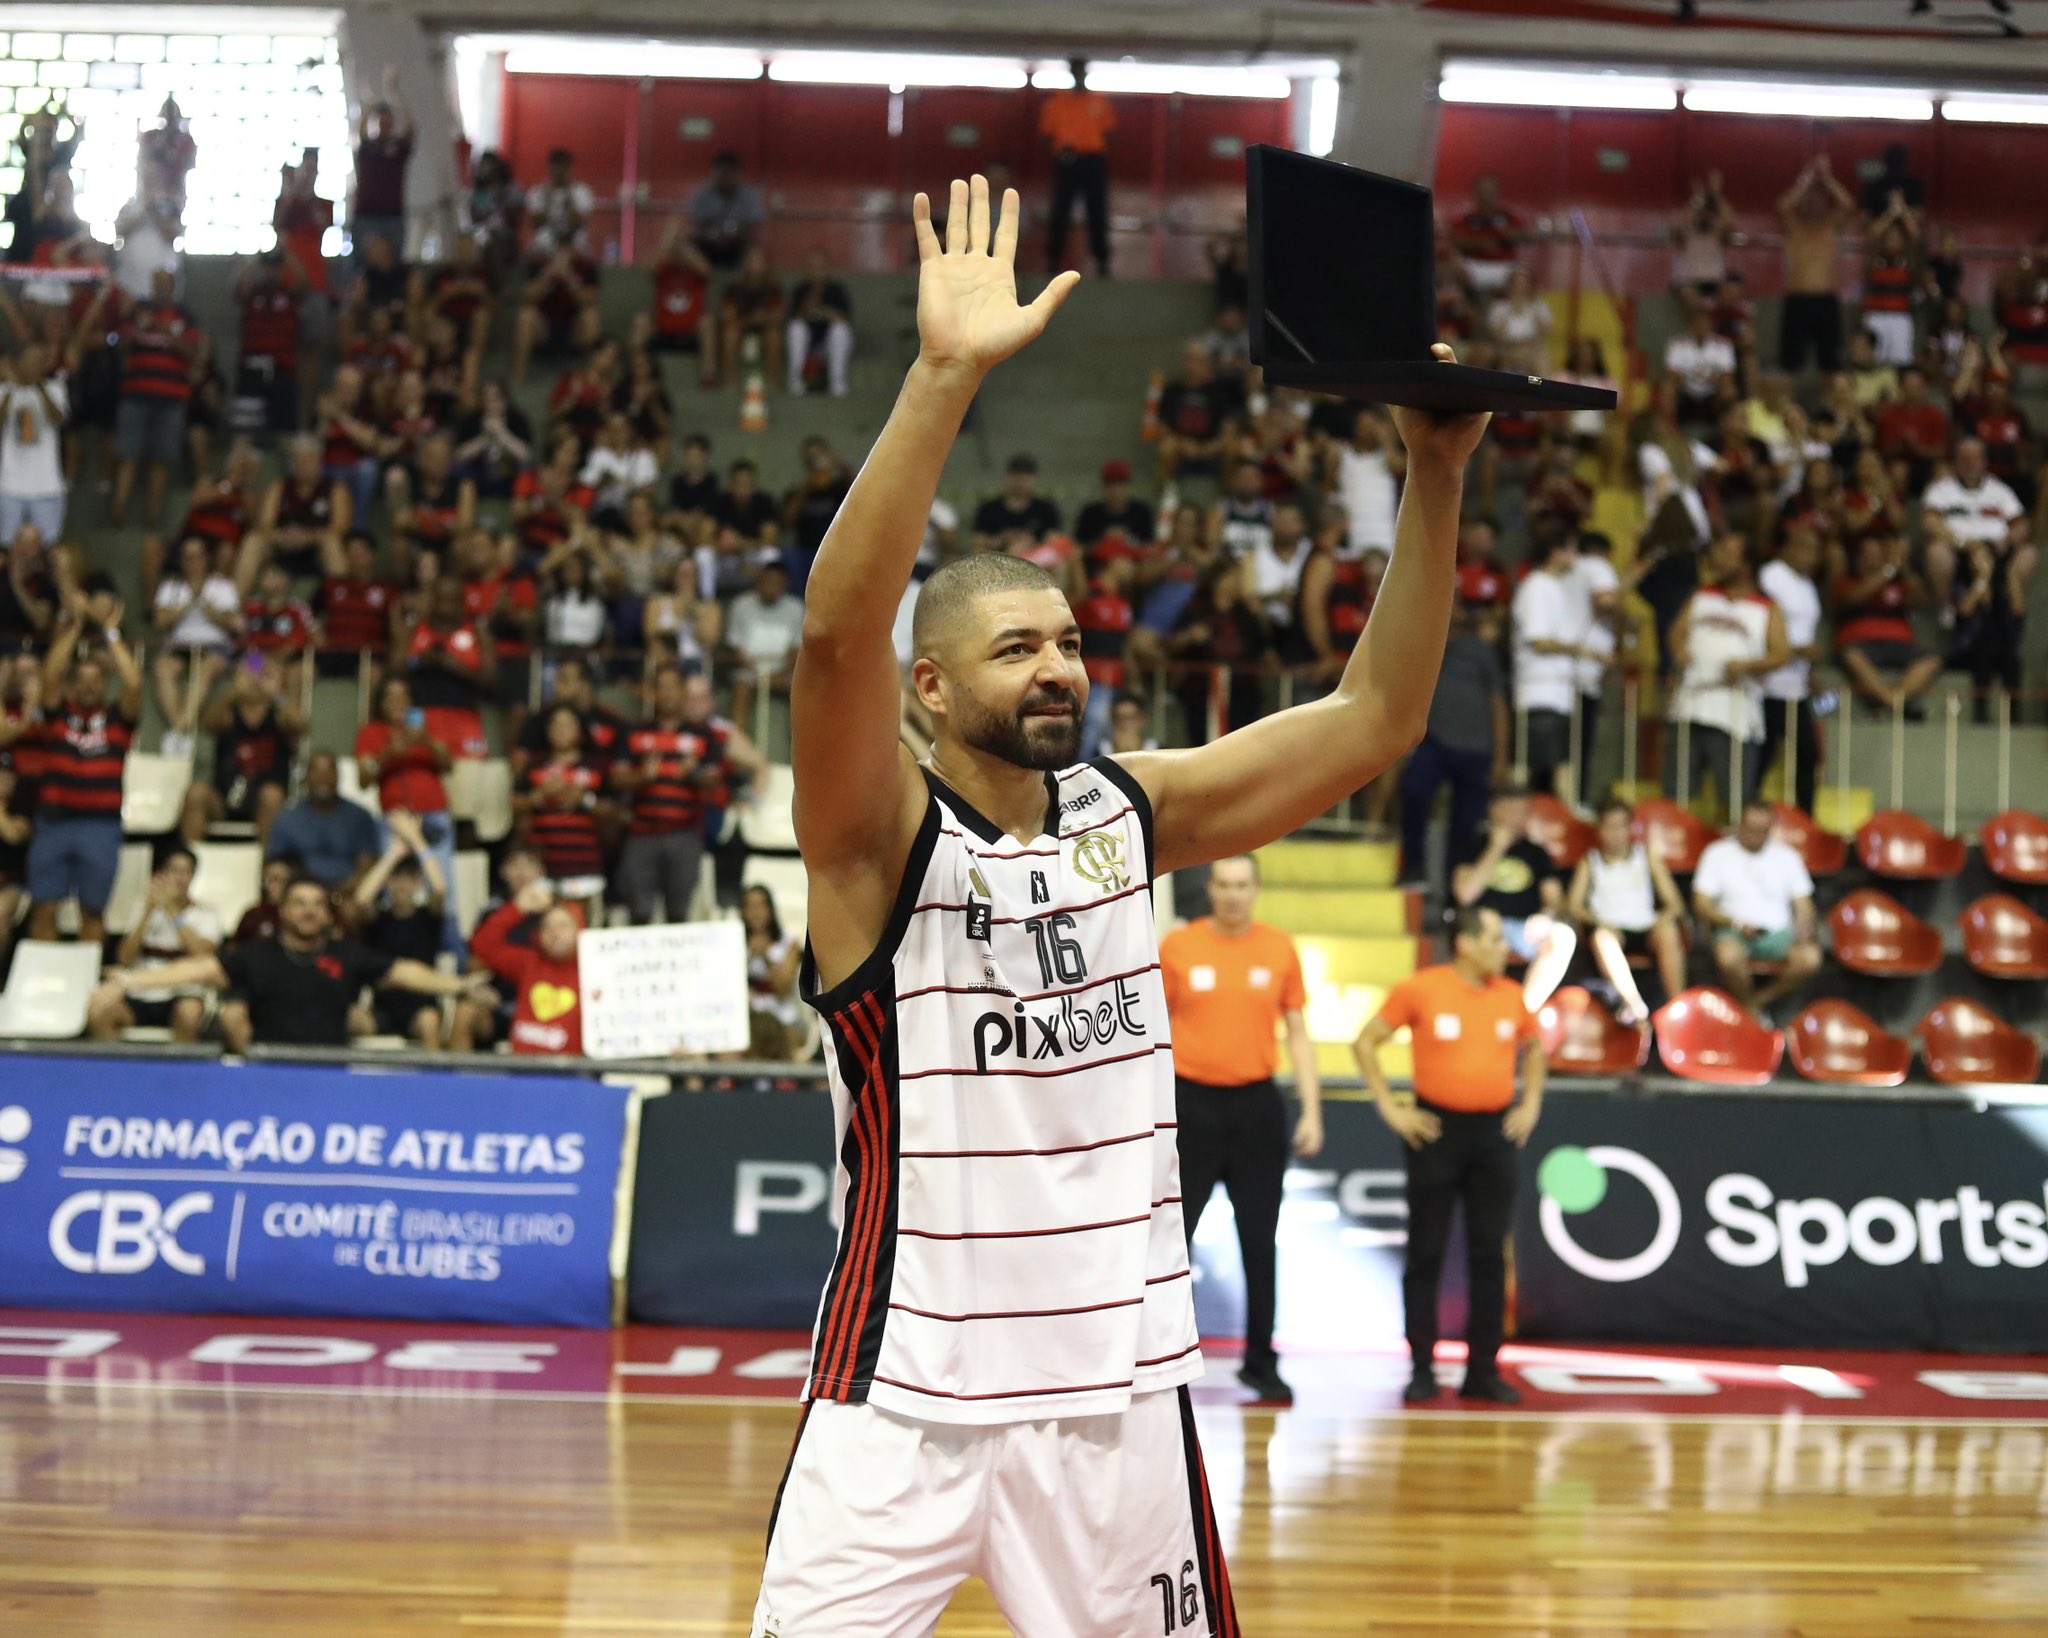 Diretor Executivo de Esportes Olímpicos do Flamengo, faz avaliação positiva do basquete: "Foi um ano relativamente bom"